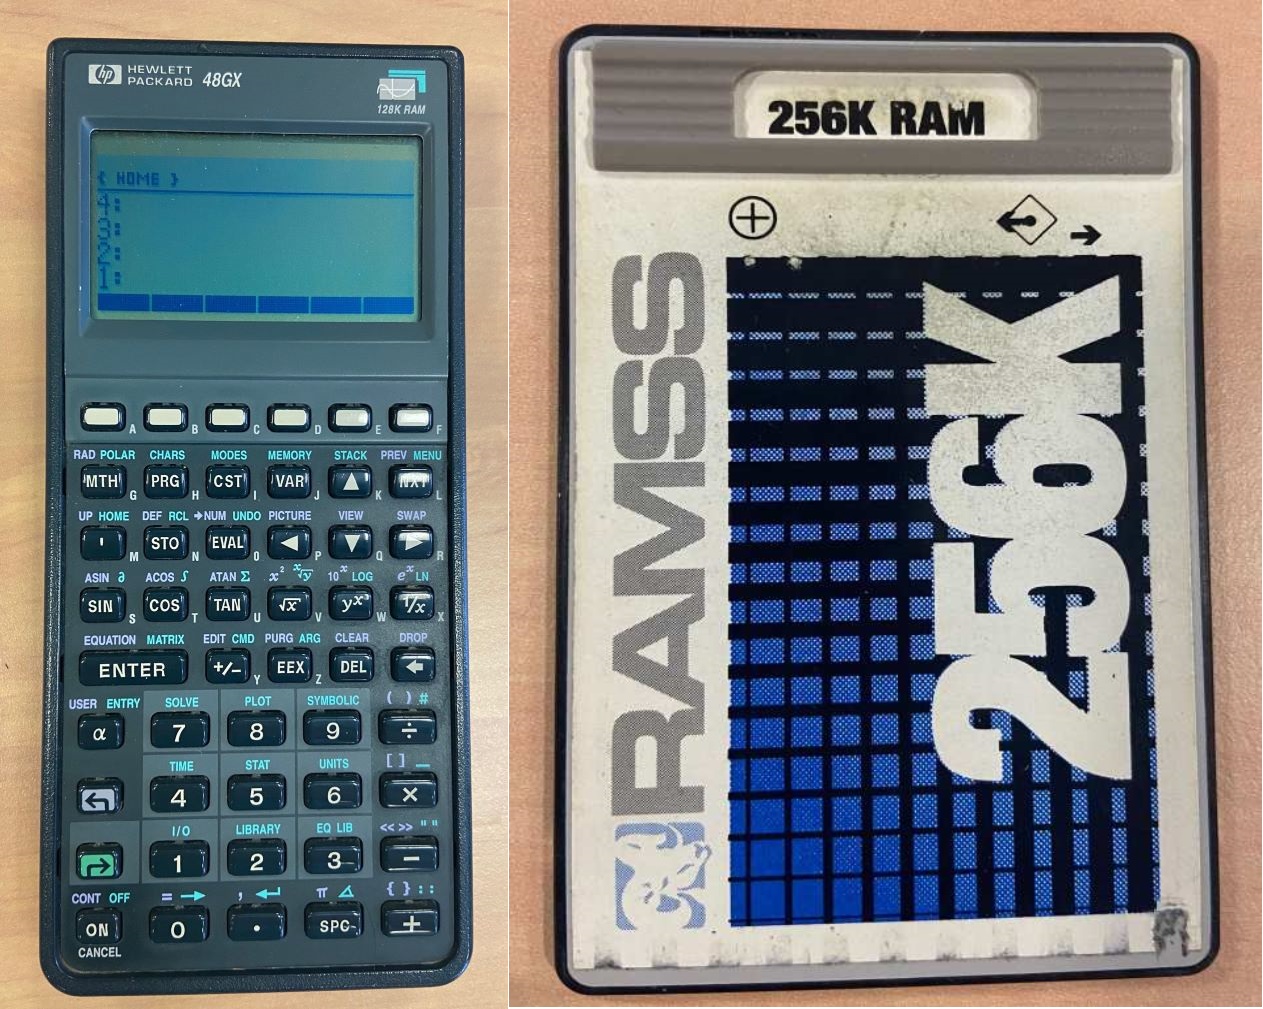 Hewlett Packard 48GX calculator and 256k RAM card